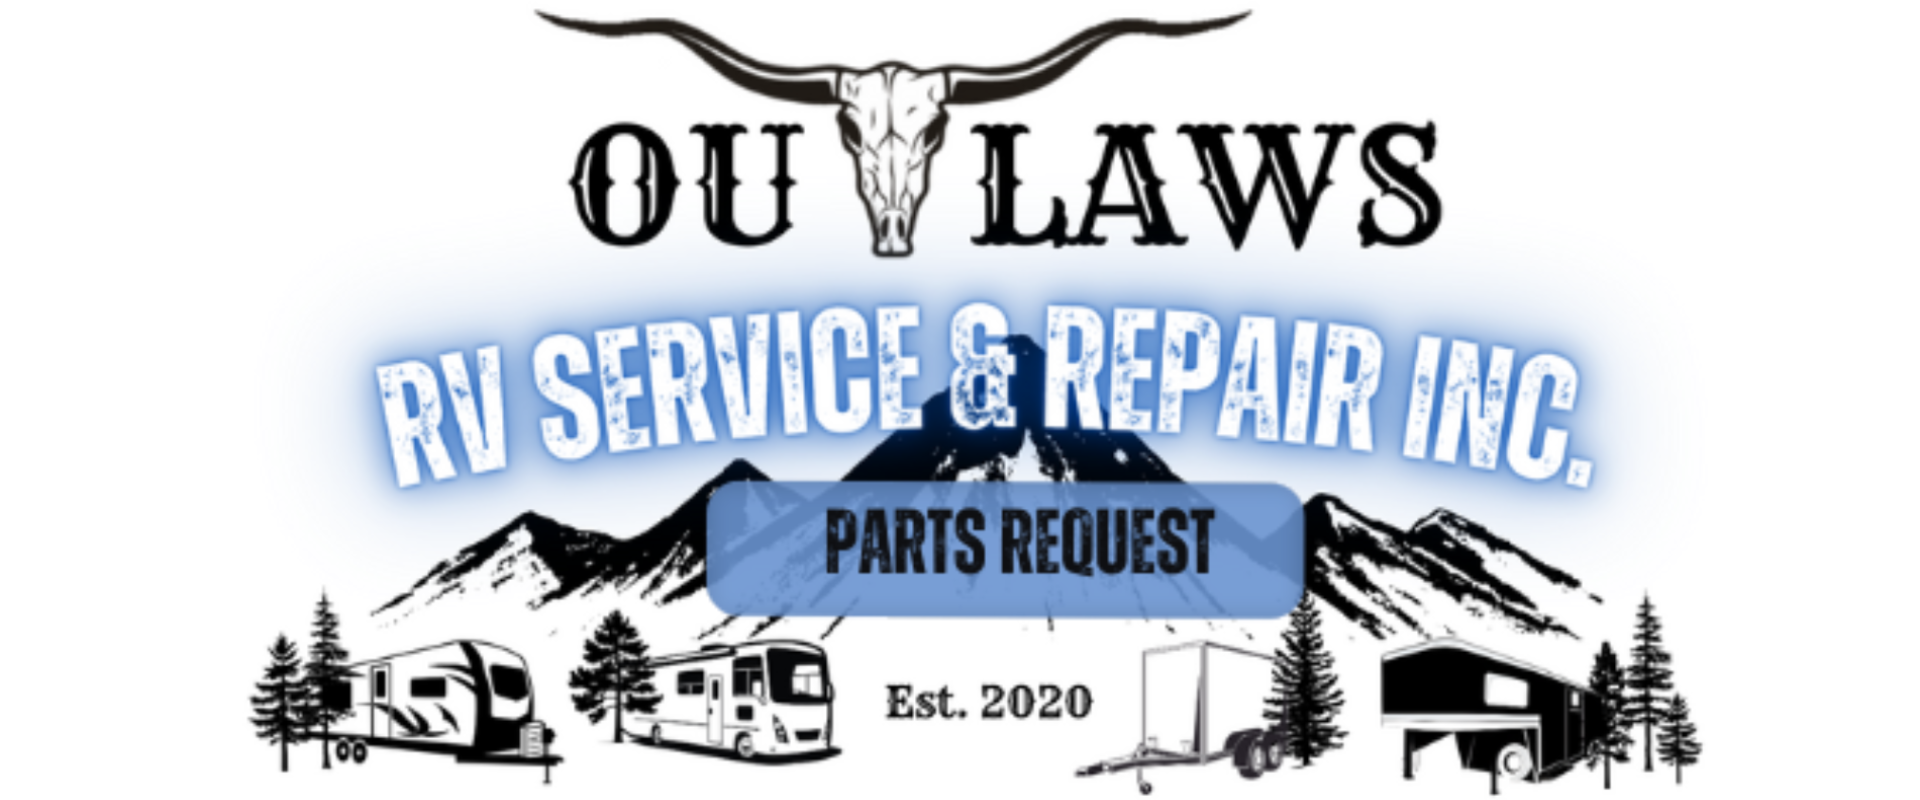 Outlaws RV Service & Repair Inc.